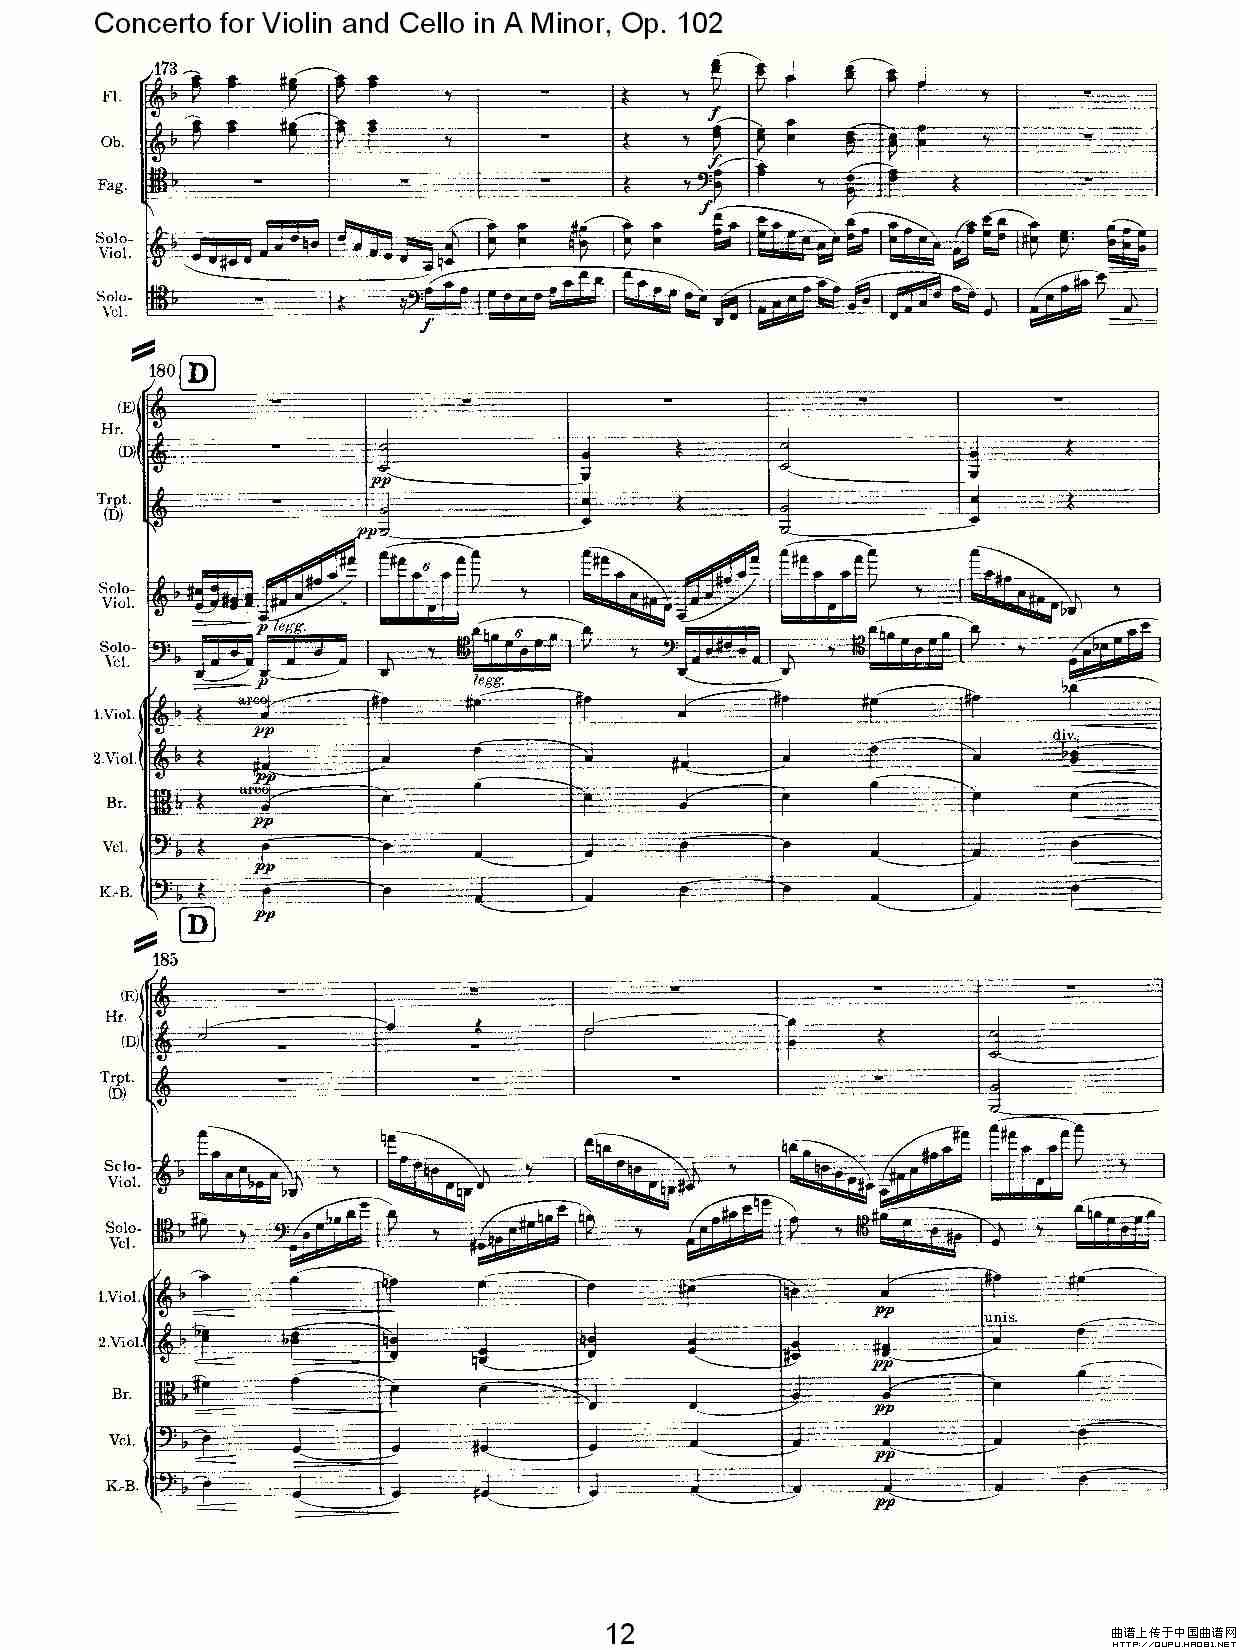 A小调小提琴与大提琴协奏曲, Op.102第三乐章小提琴谱